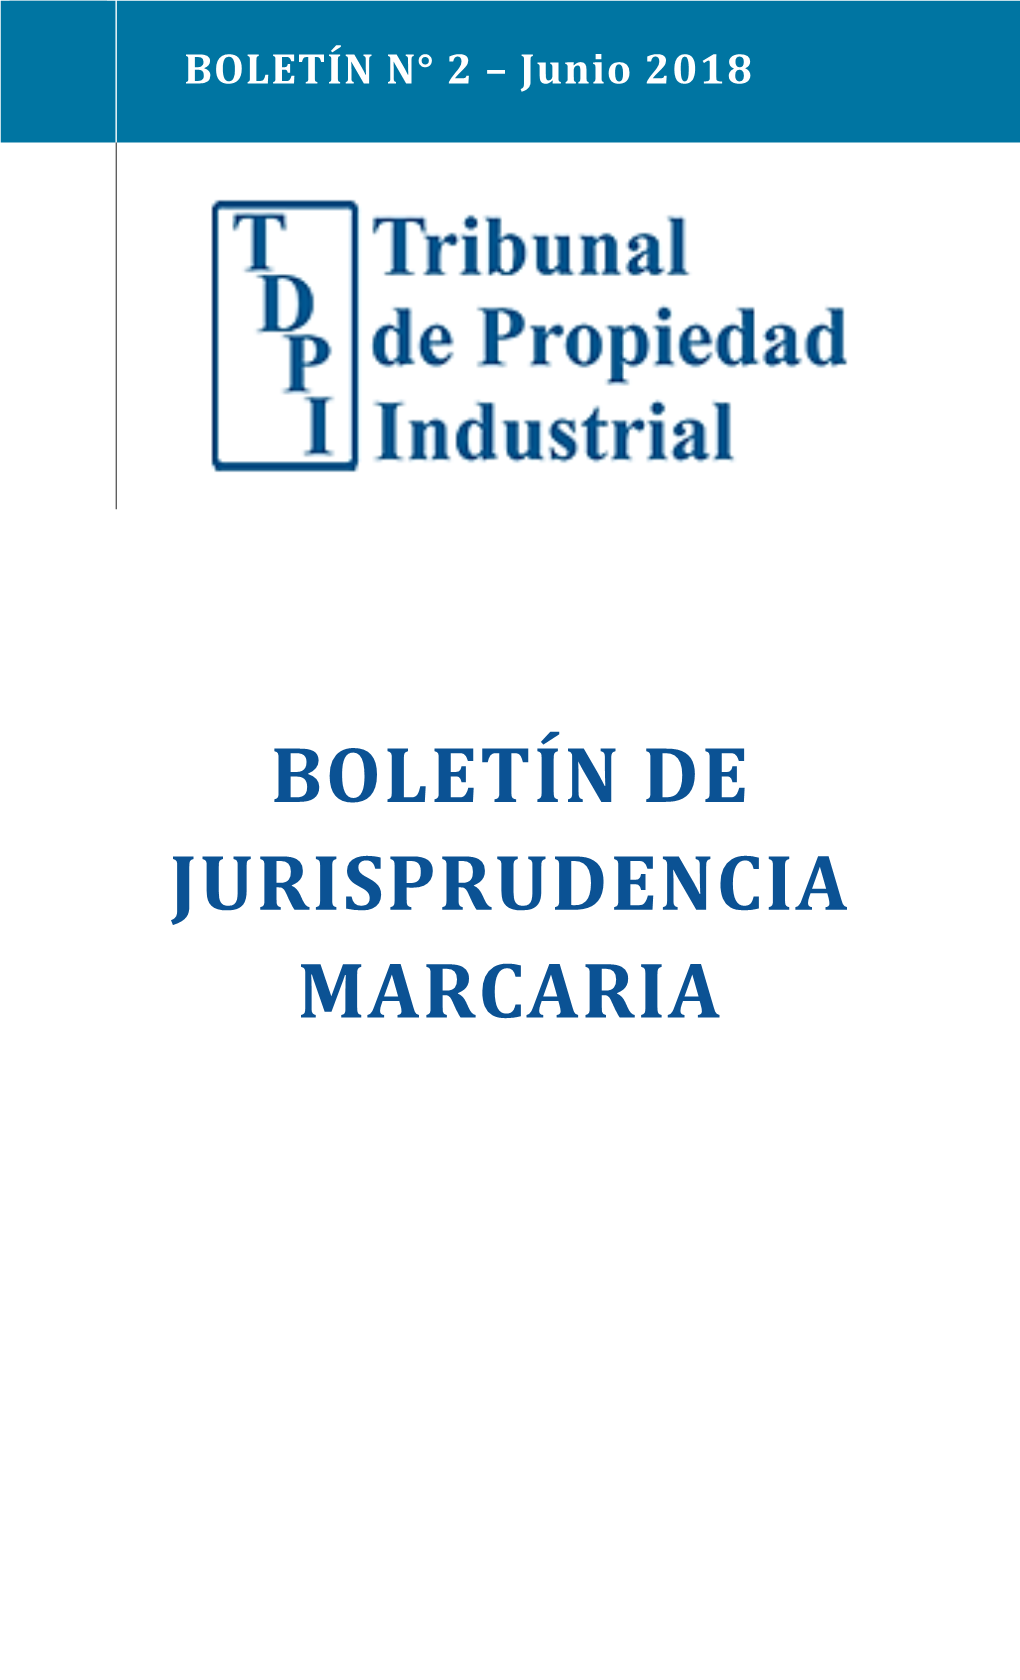 Boletín N°2 De Jurisprudencia Marcaria – Junio 2018